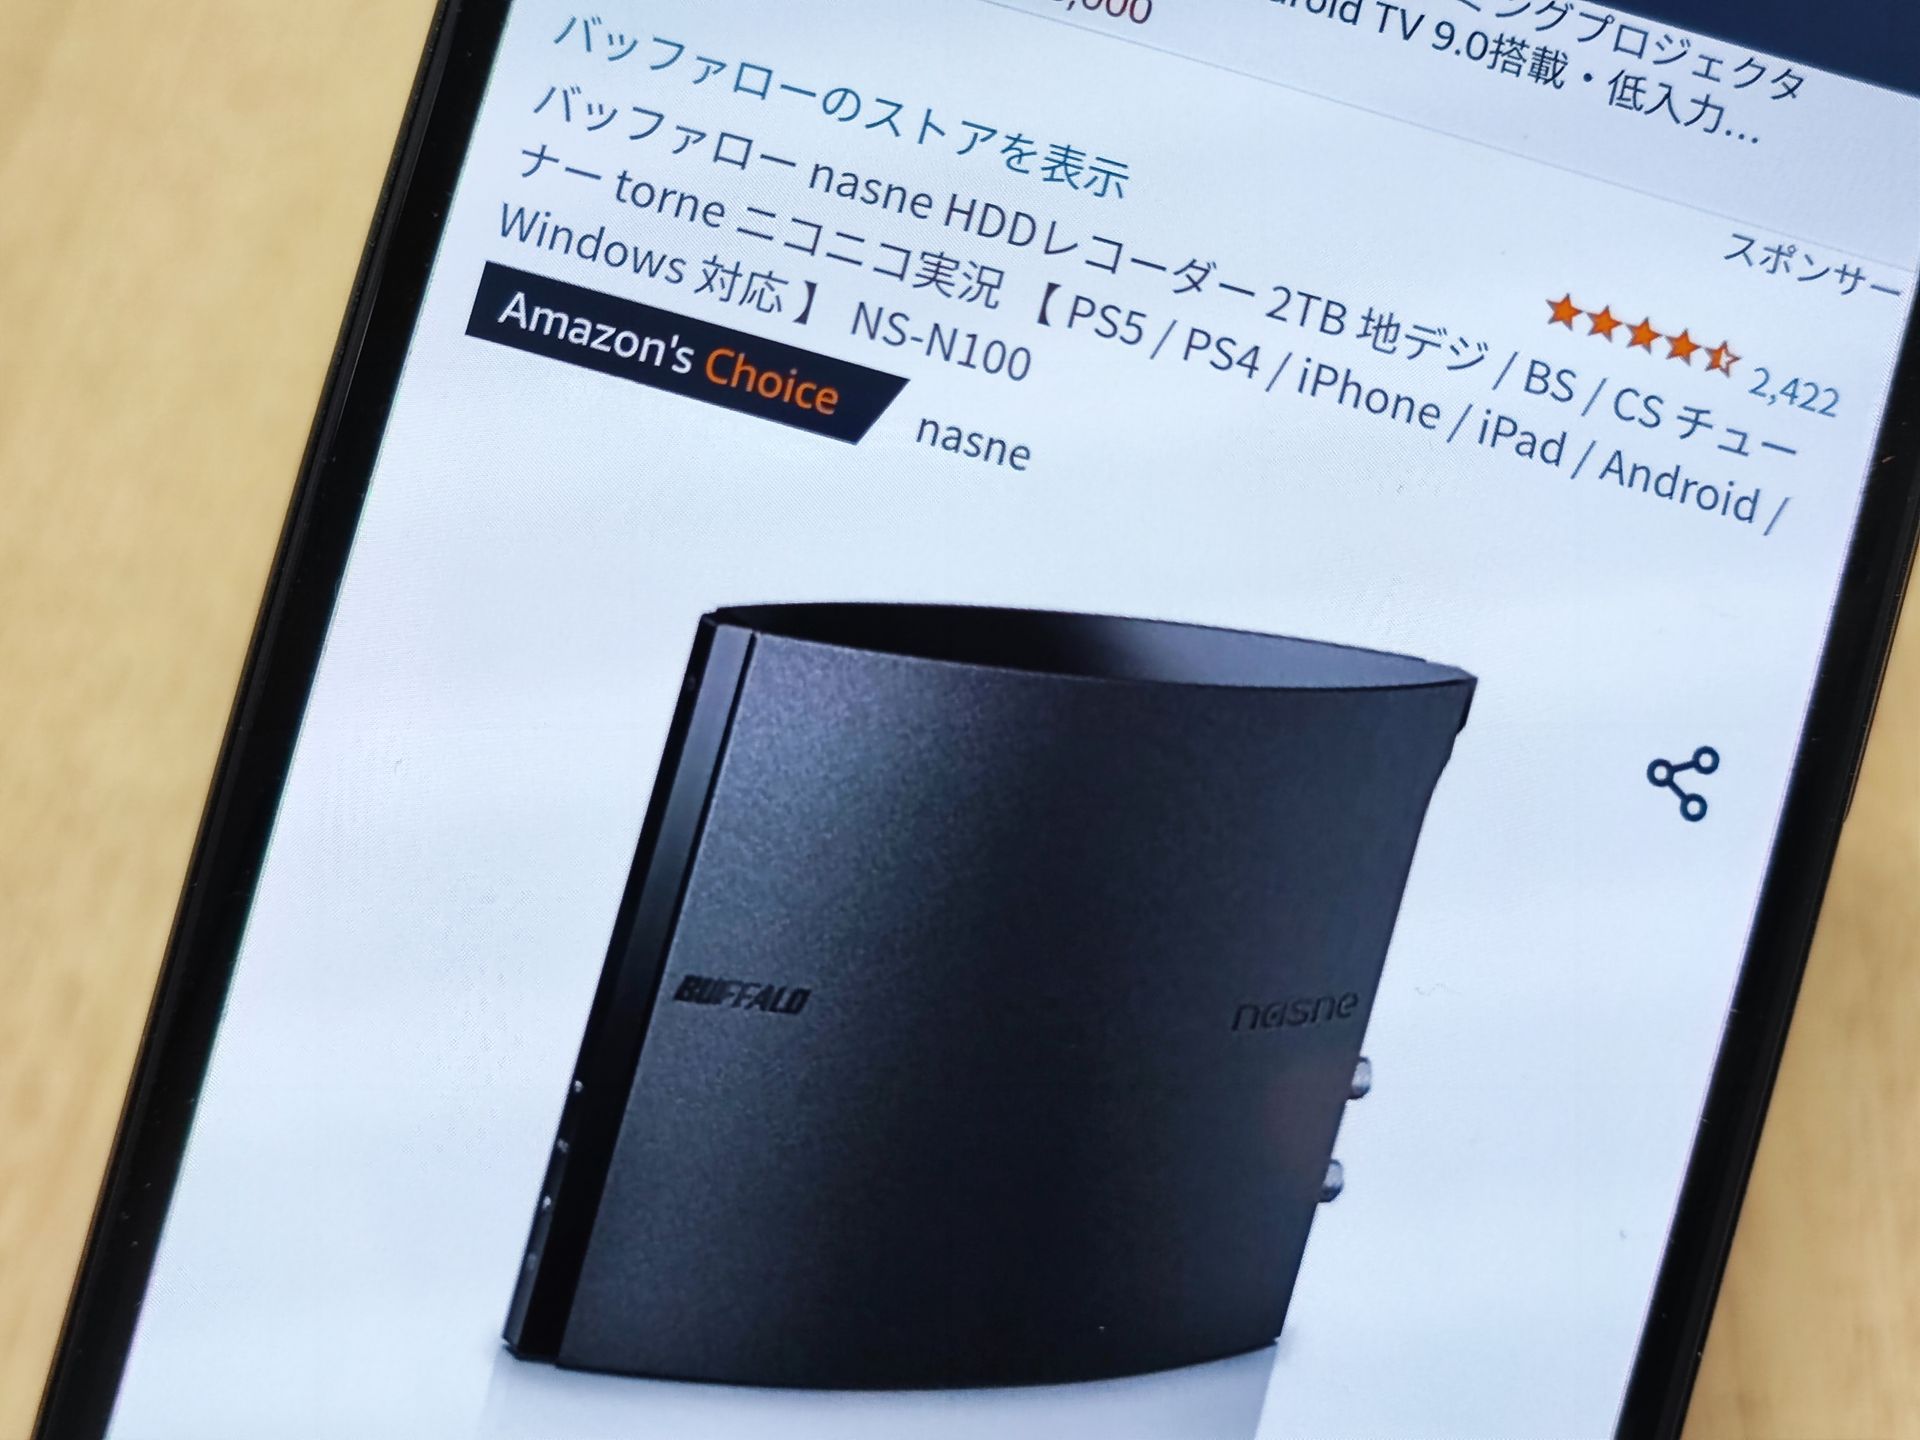 nasne HDDレコーダー 2TB」が1500円割引に【Amazonタイムセール祭り